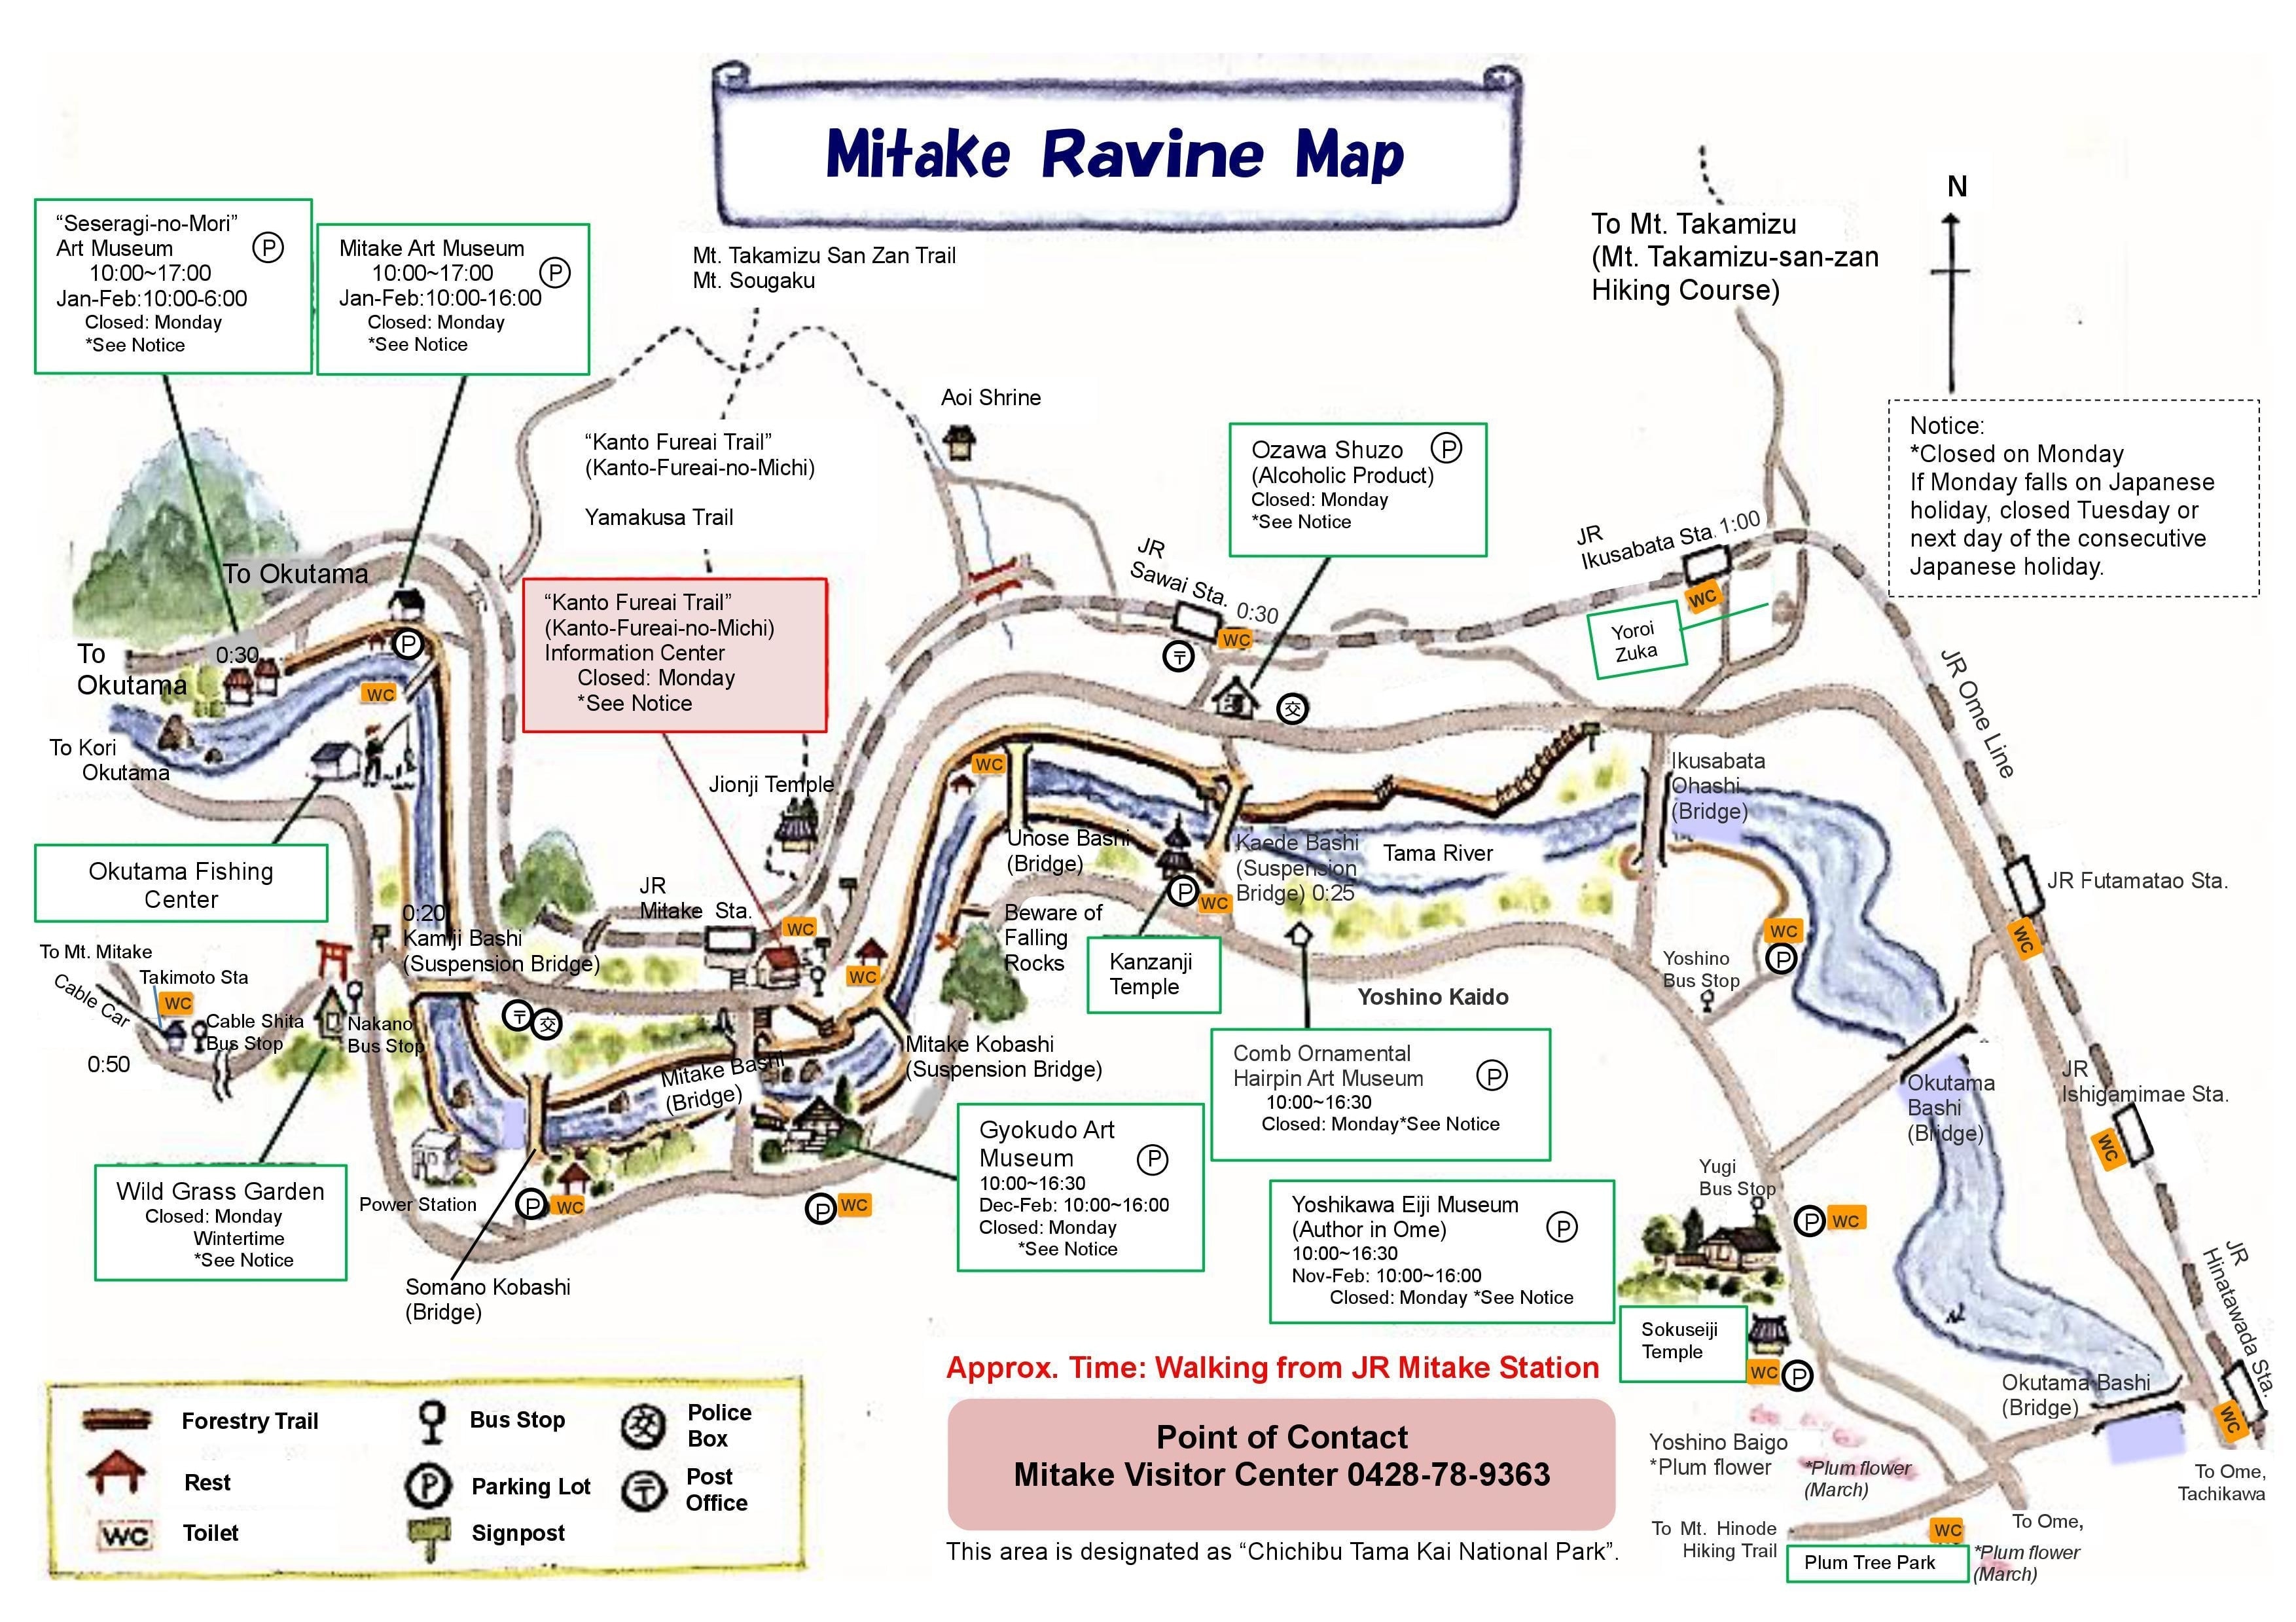 Mitake Ravine Map